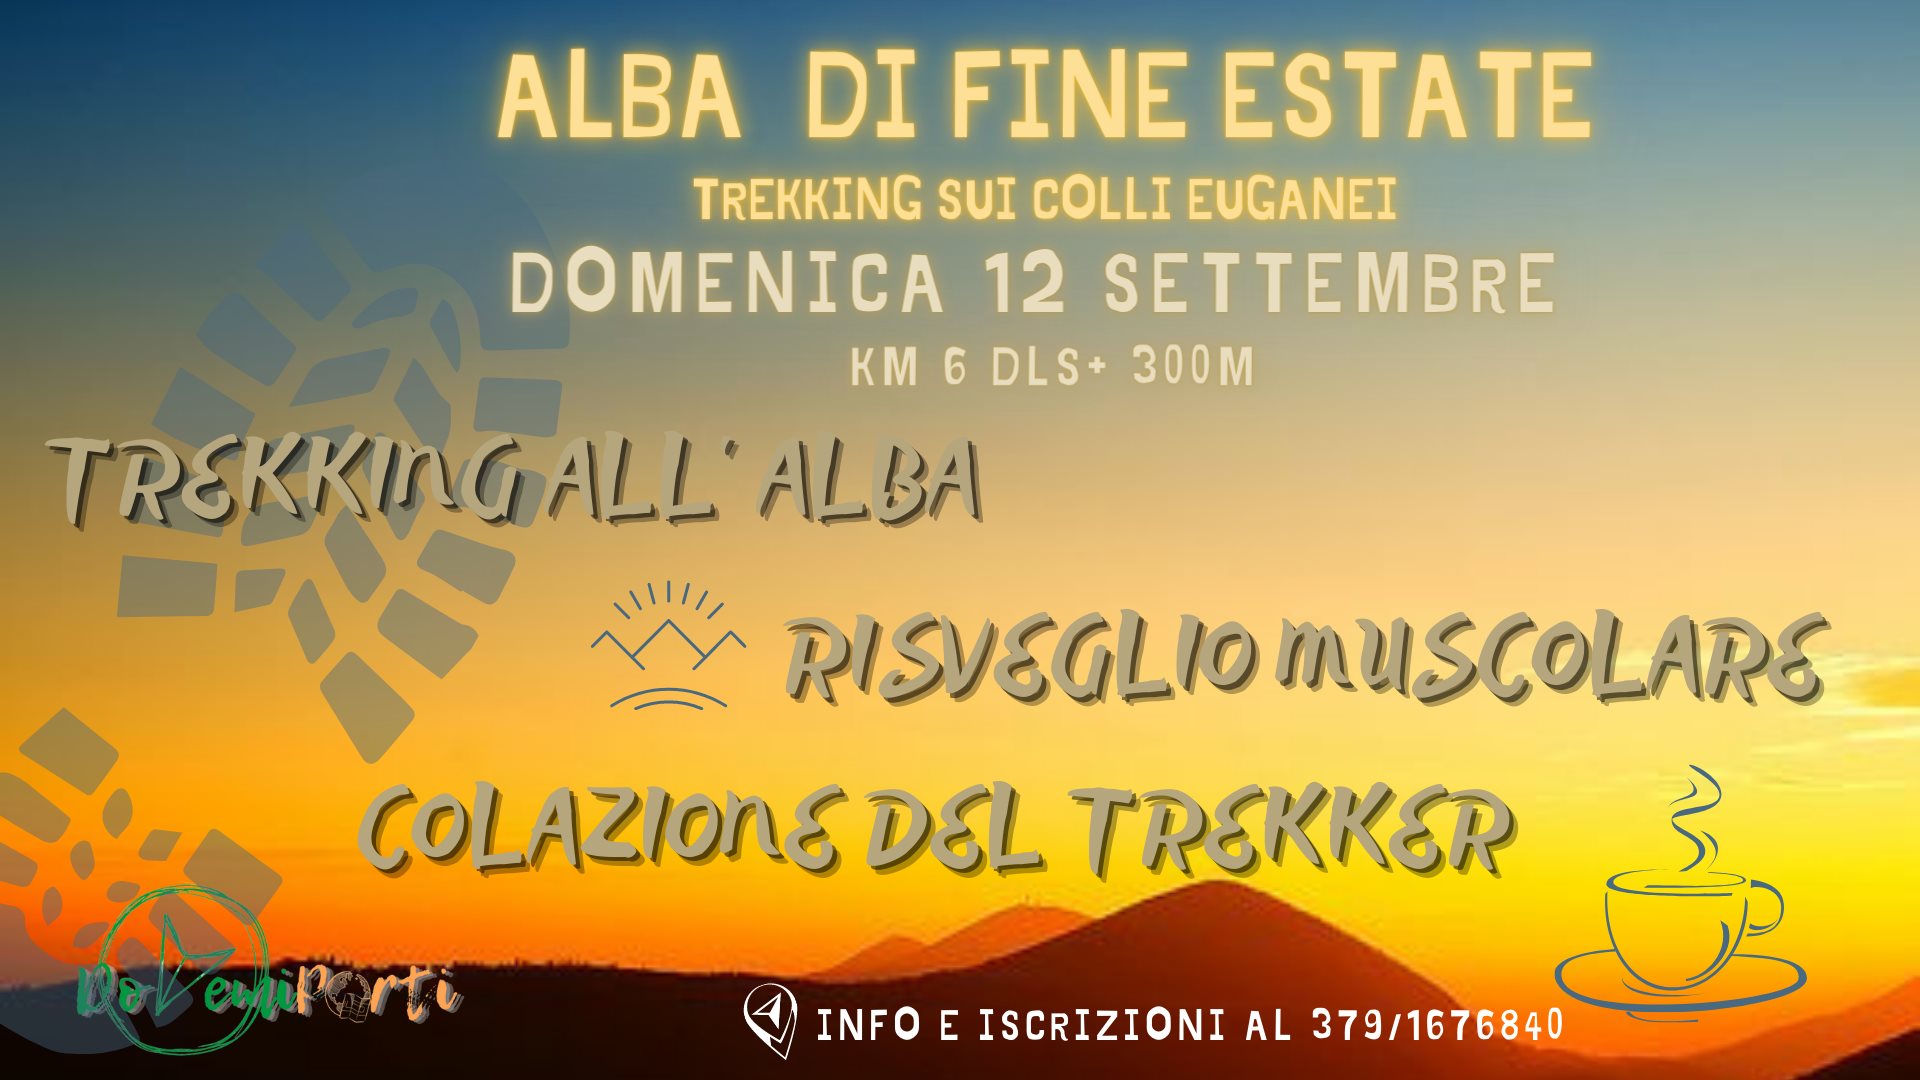 Alba di fine estate - Trekking sui Colli Euganei